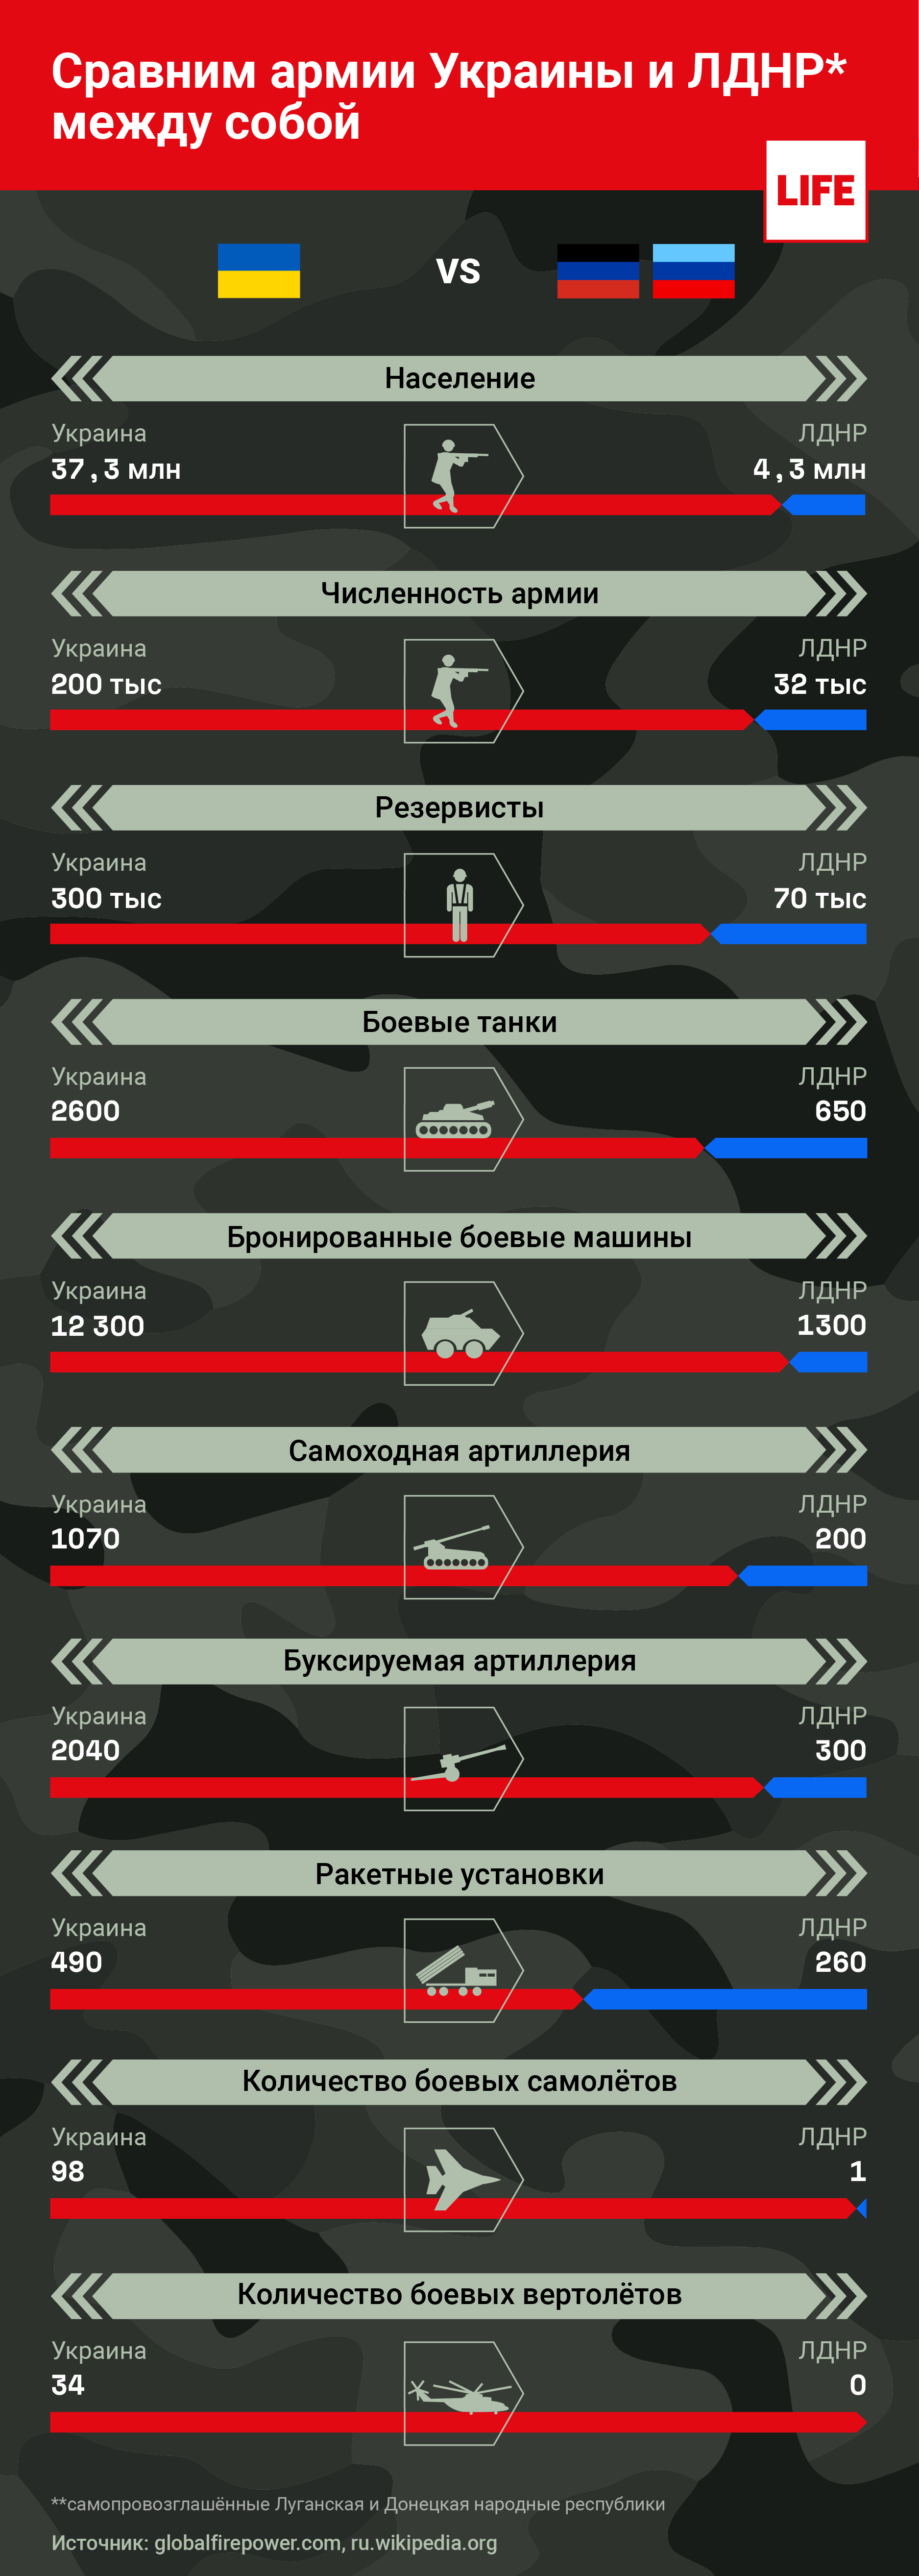 Сравним армии Украины и ЛДНР между собой. Инфографика © LIFE